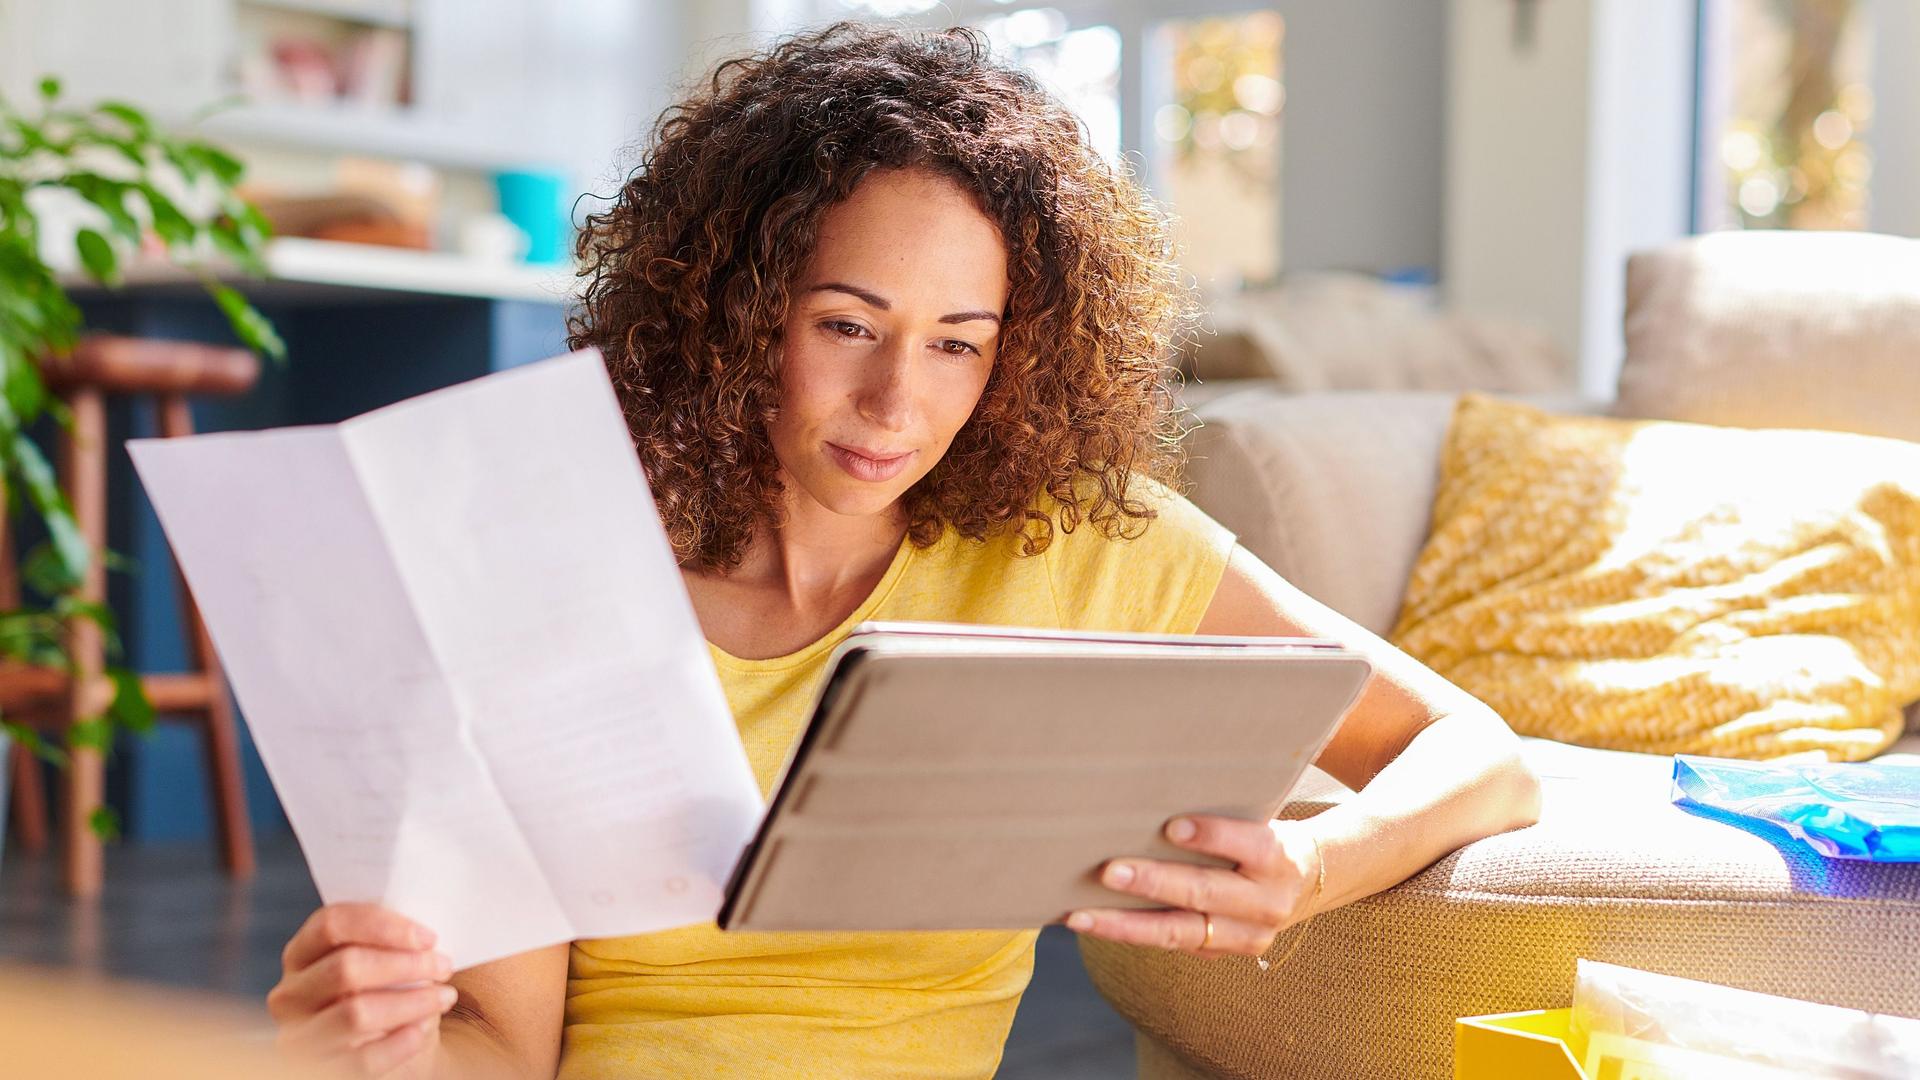 Eine junge Frau sitzt in einem hellen Wohnzimmer vor dem Sofa auf dem Boden und schaut auf ein Tablet in ihrer linken Hand. In der anderen Hand hält sie ein Stück Papier.